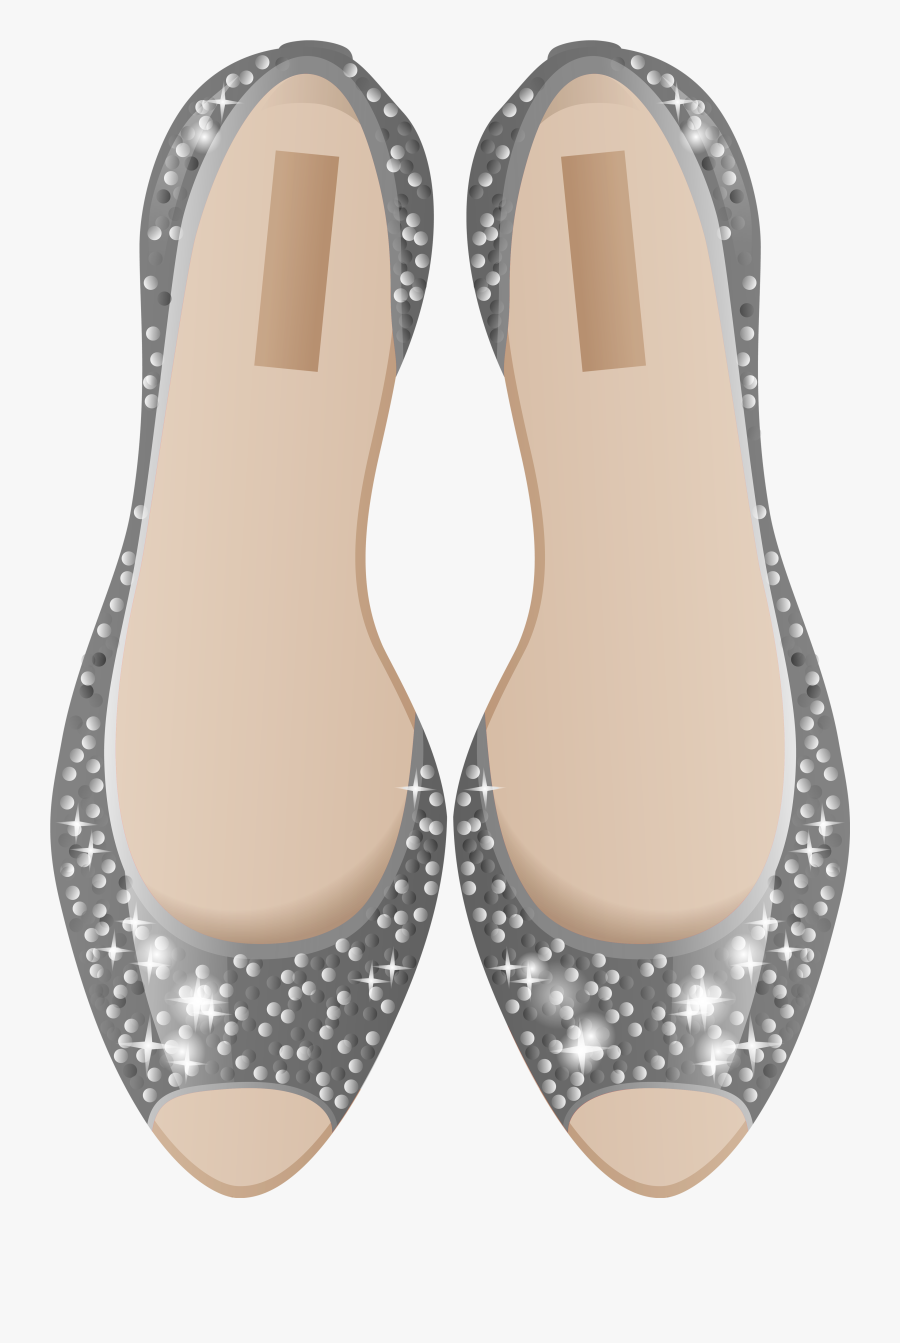 Silver Shoes Png Clip Art, Transparent Clipart